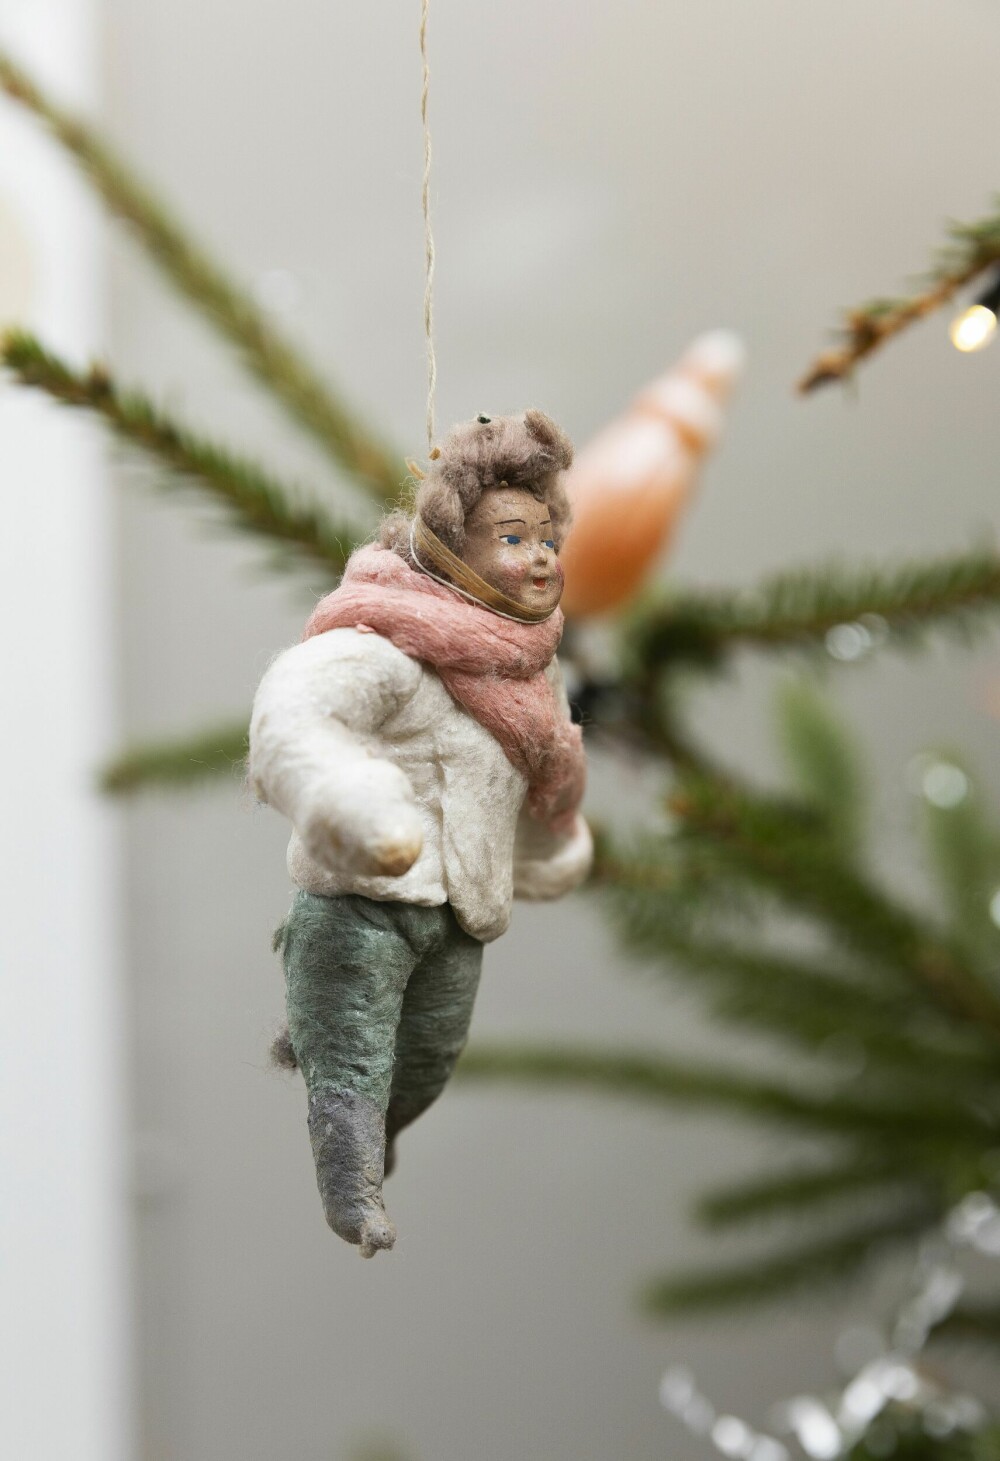 <b>REISEMINNER:</b> Den lille vinterkledde gutten av bomull er tysk fra omkring 1910. Jeg kjøpte han i en antikvitetsbutikk i St. Petersburg. Gammel julepynt som dette er kjærkomne reiseminner og like hyggelig å finne frem når julen nærmer seg.